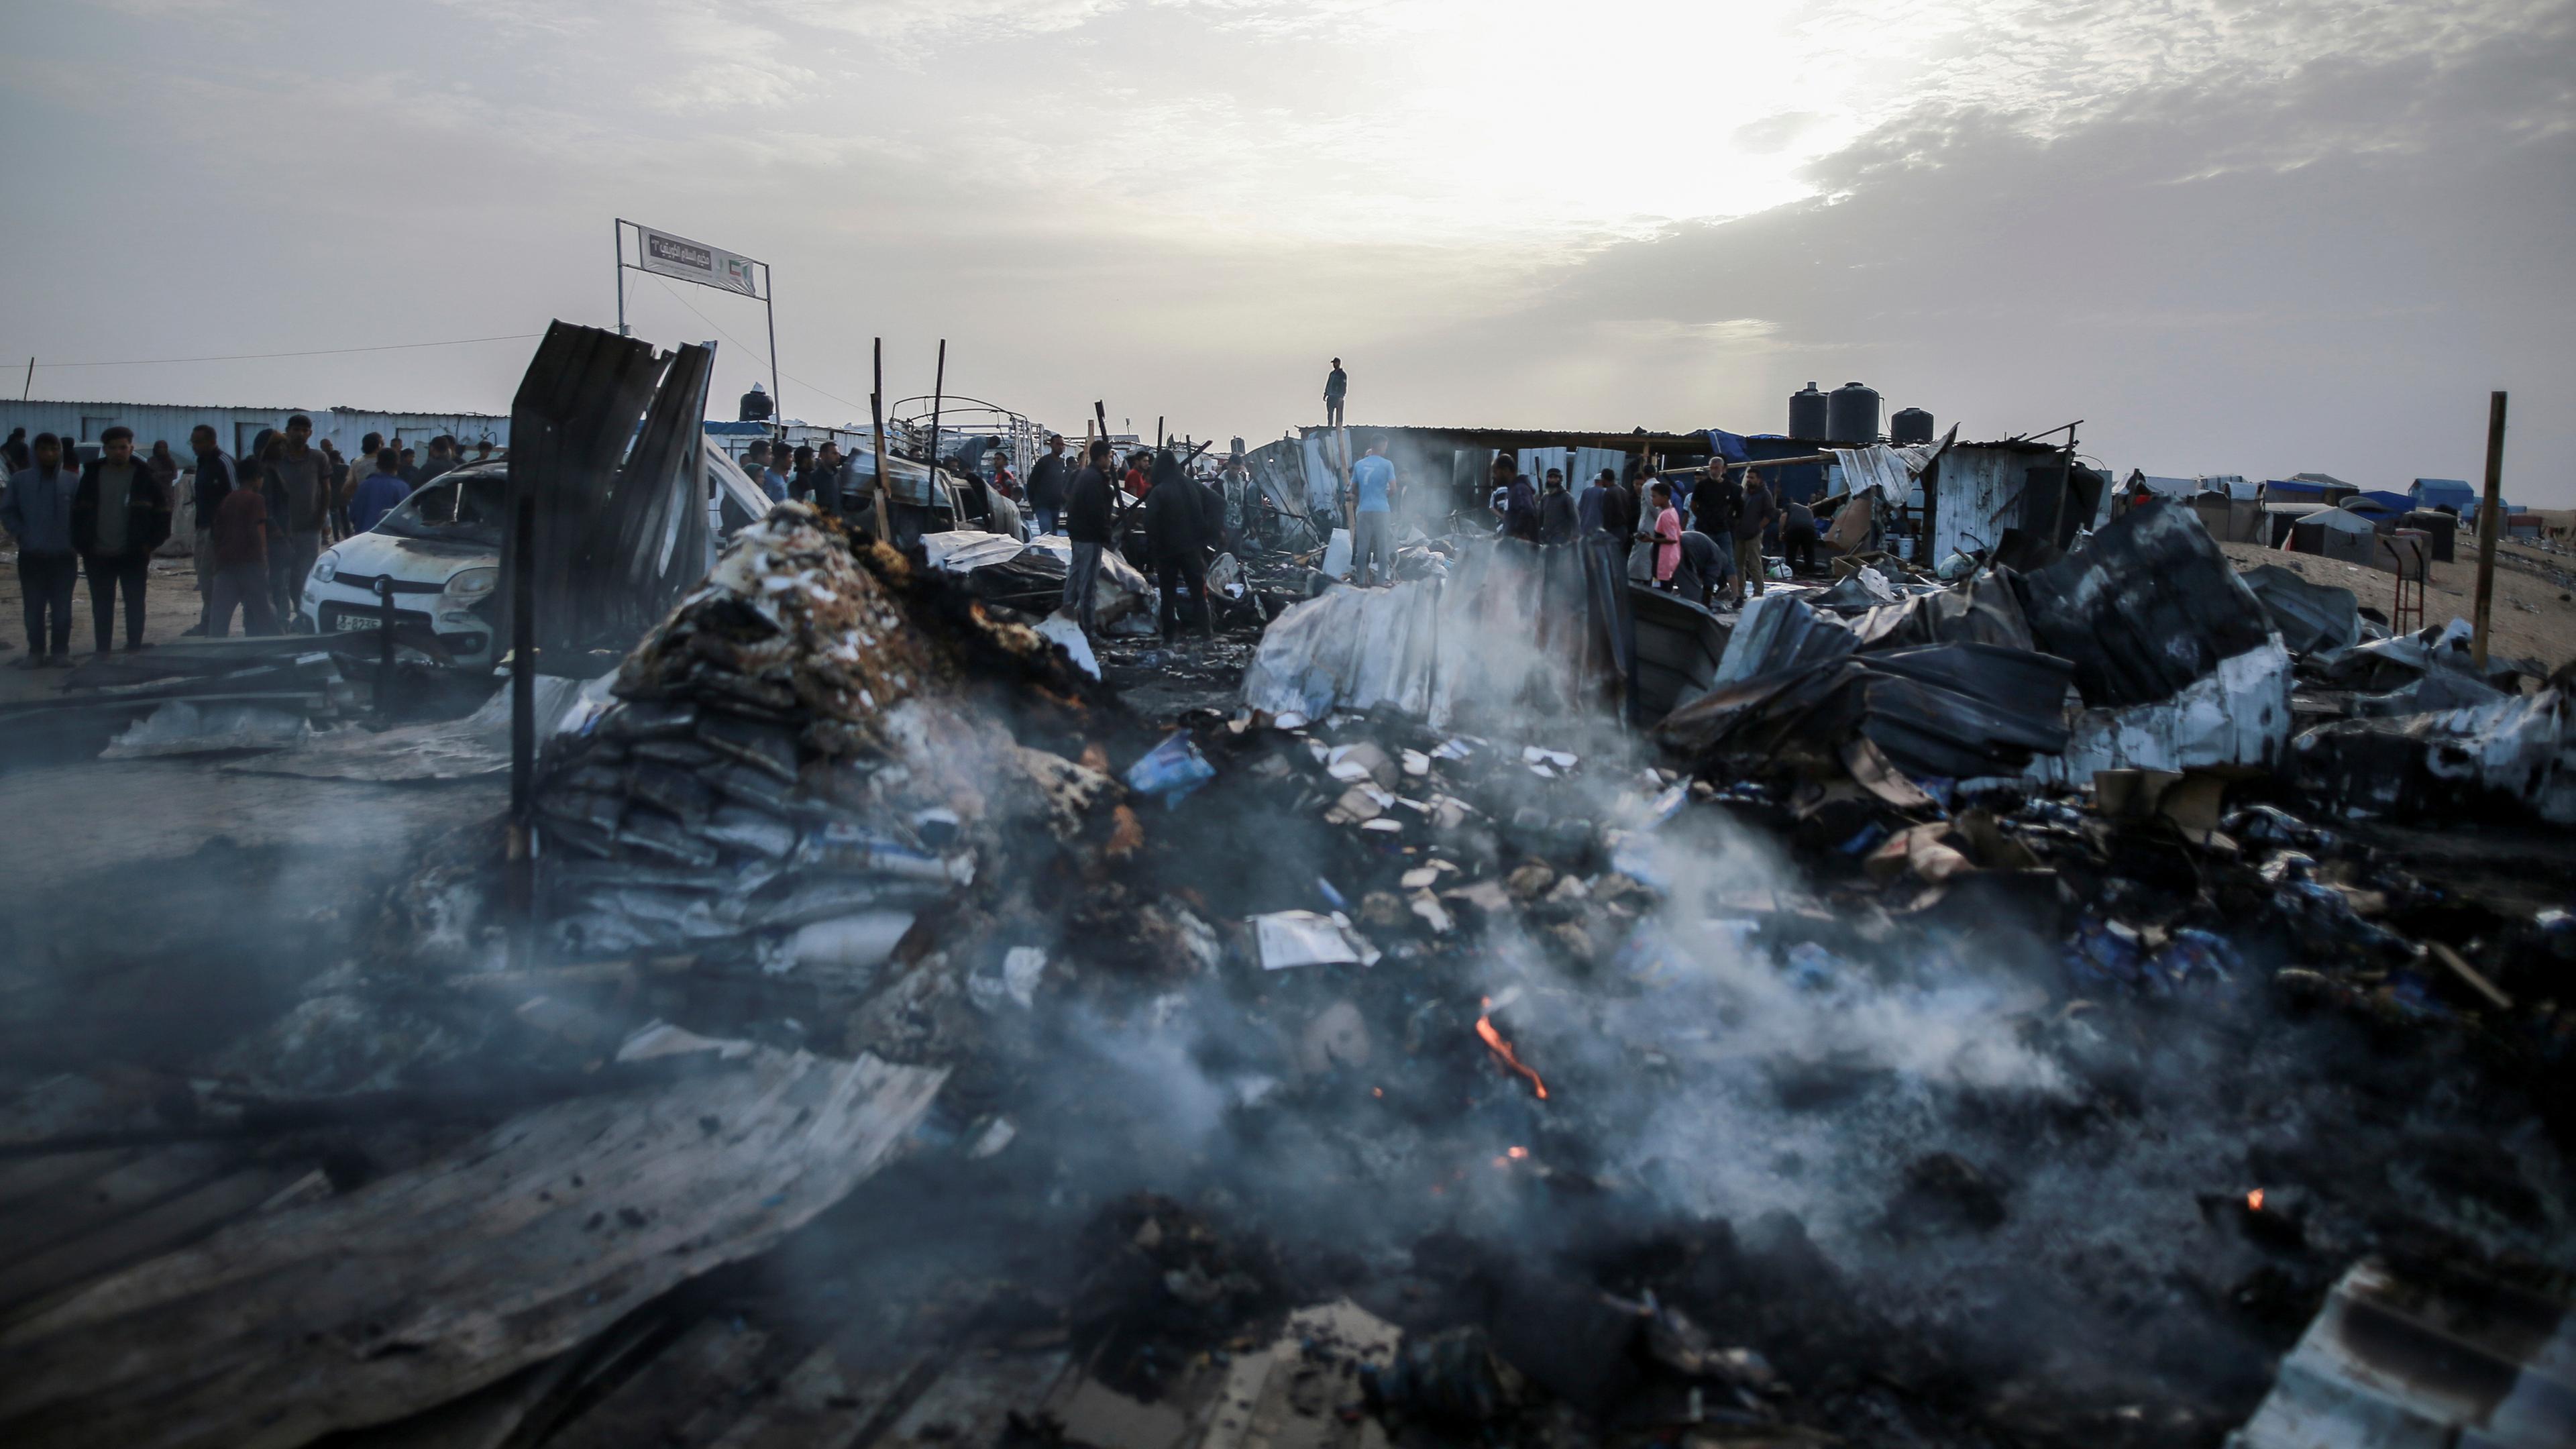 Palästinensische Gebiete, Rafah: Palästinenser inspizieren zerstörte Zelte und Unterkünfte neben einem ausgebrannten Auto nach einem israelischen Luftangriff auf ein Flüchtlingslager.